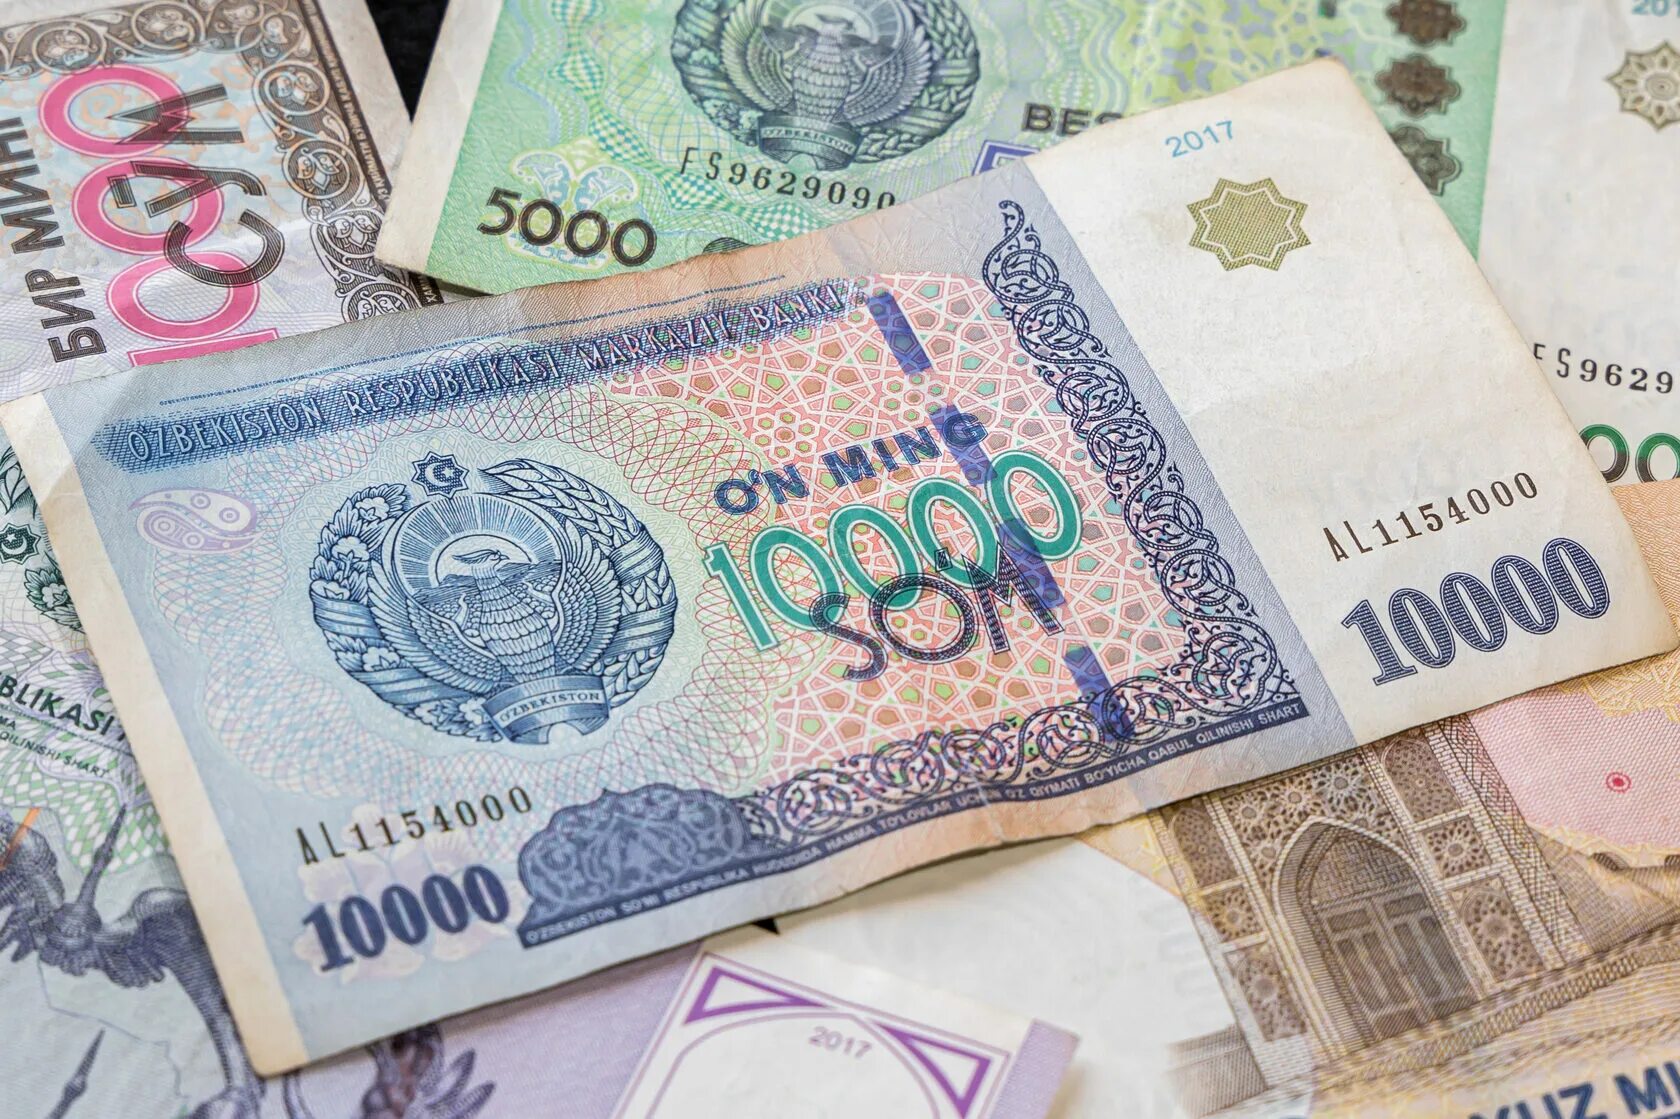 Узбекские сумы в москве. 2000 Узбекских сум. Узбекистан валюта 100$. Валюта Узбекистана сум. Банкноты Узбекистана.